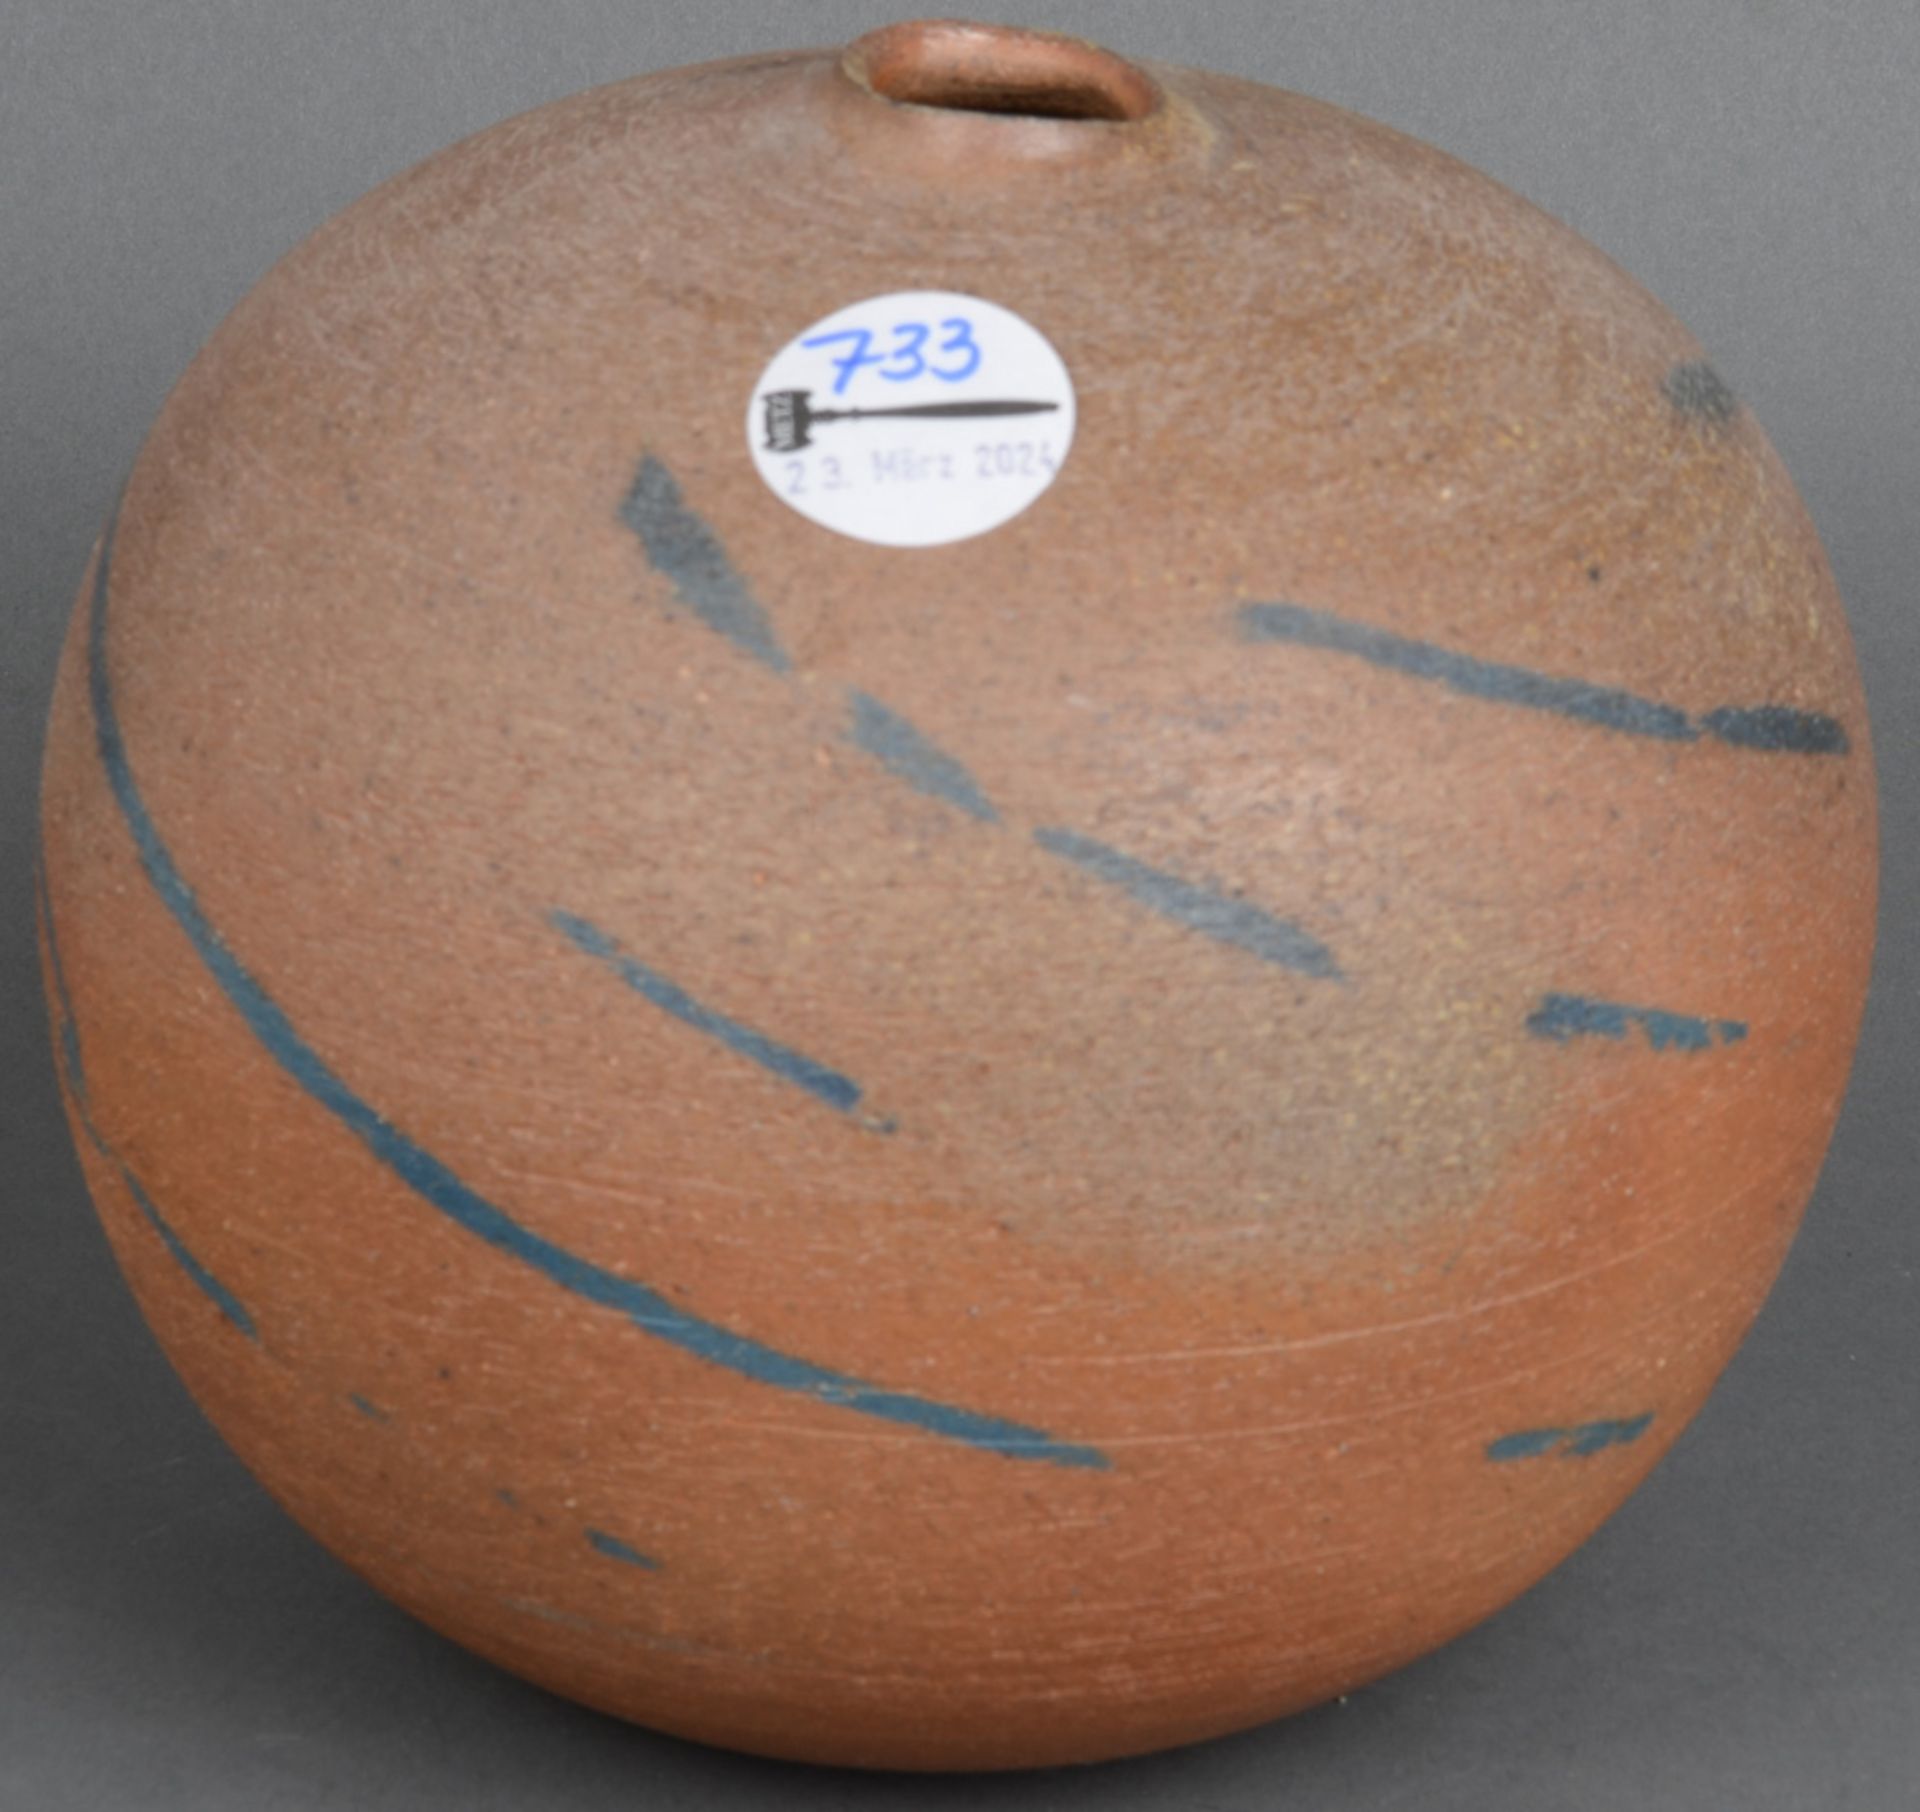 Balusterförmige Vase. Kandern, Horst Kerstan (1941-2005) dat. 1985. Keramik, aufwendig geformt und